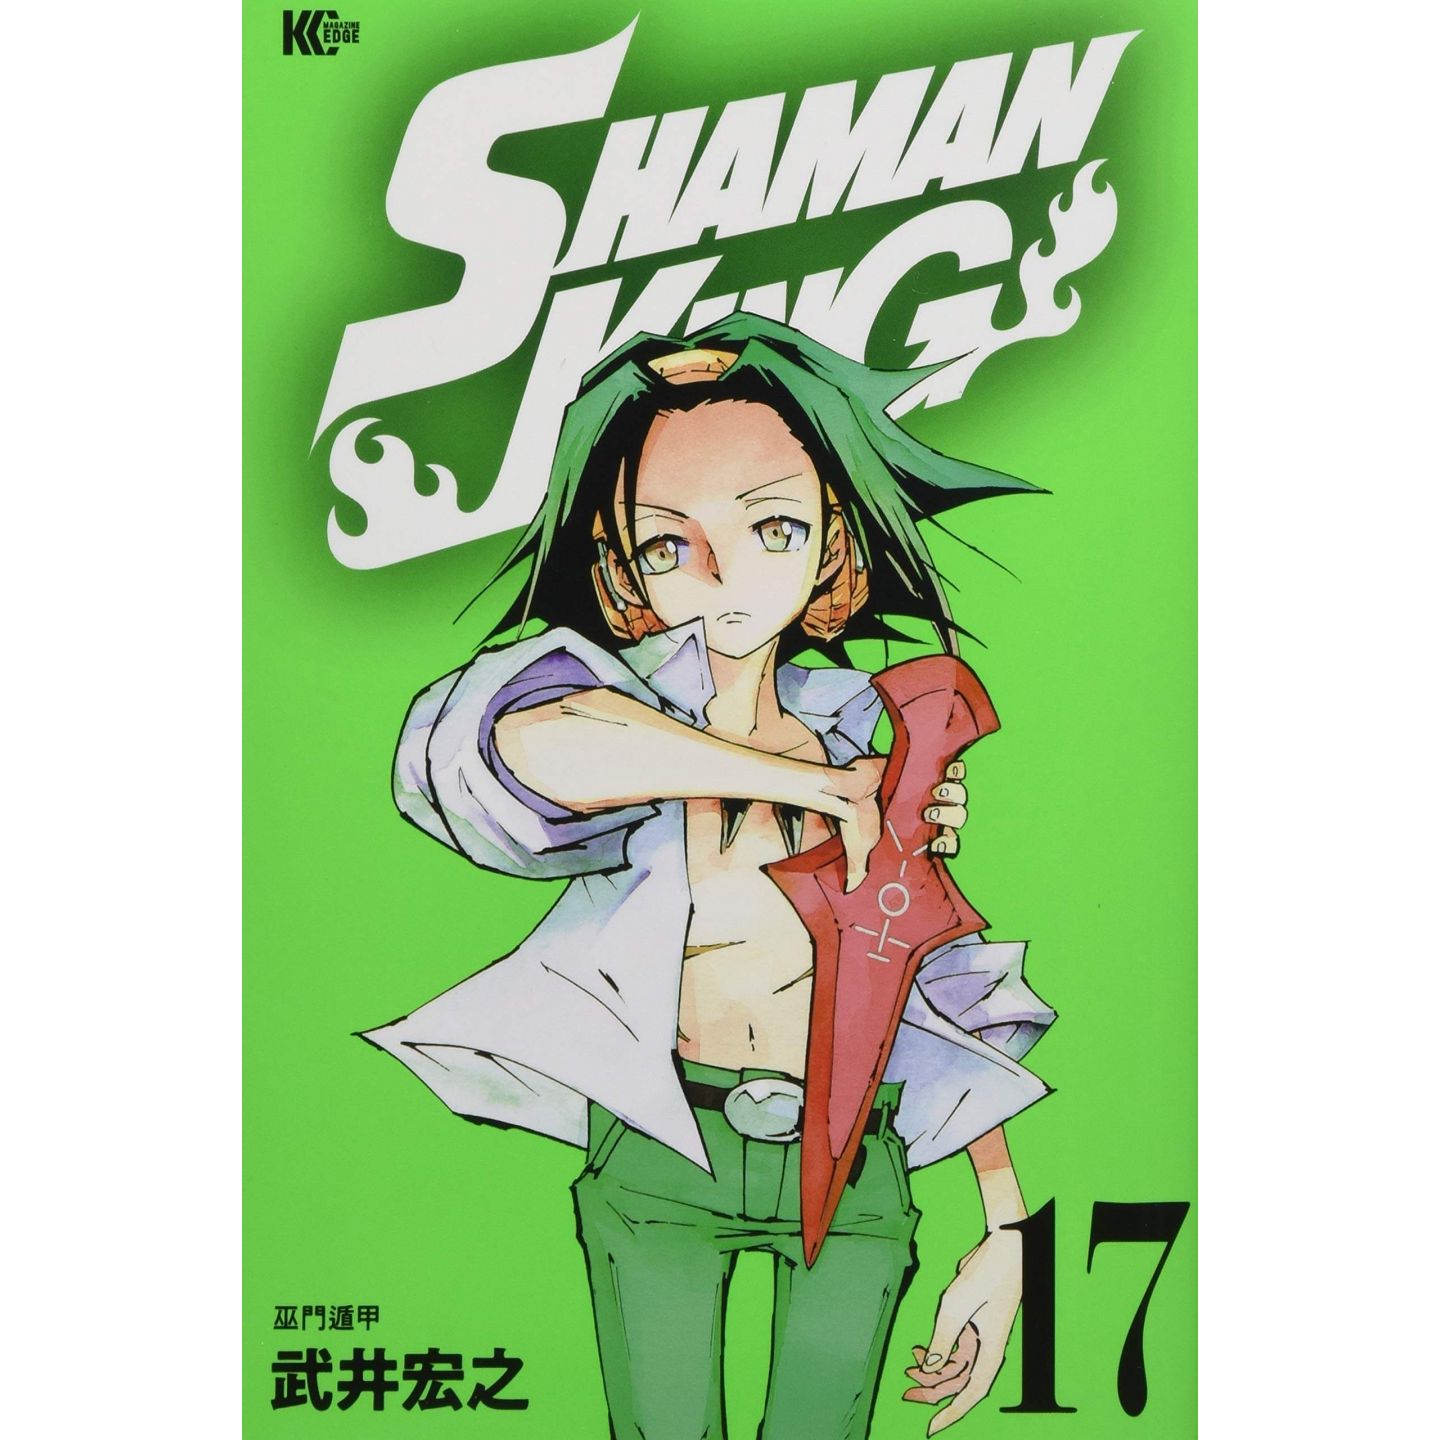 Shaman King Vol 17 Magazine Edge Kc Japanese Version